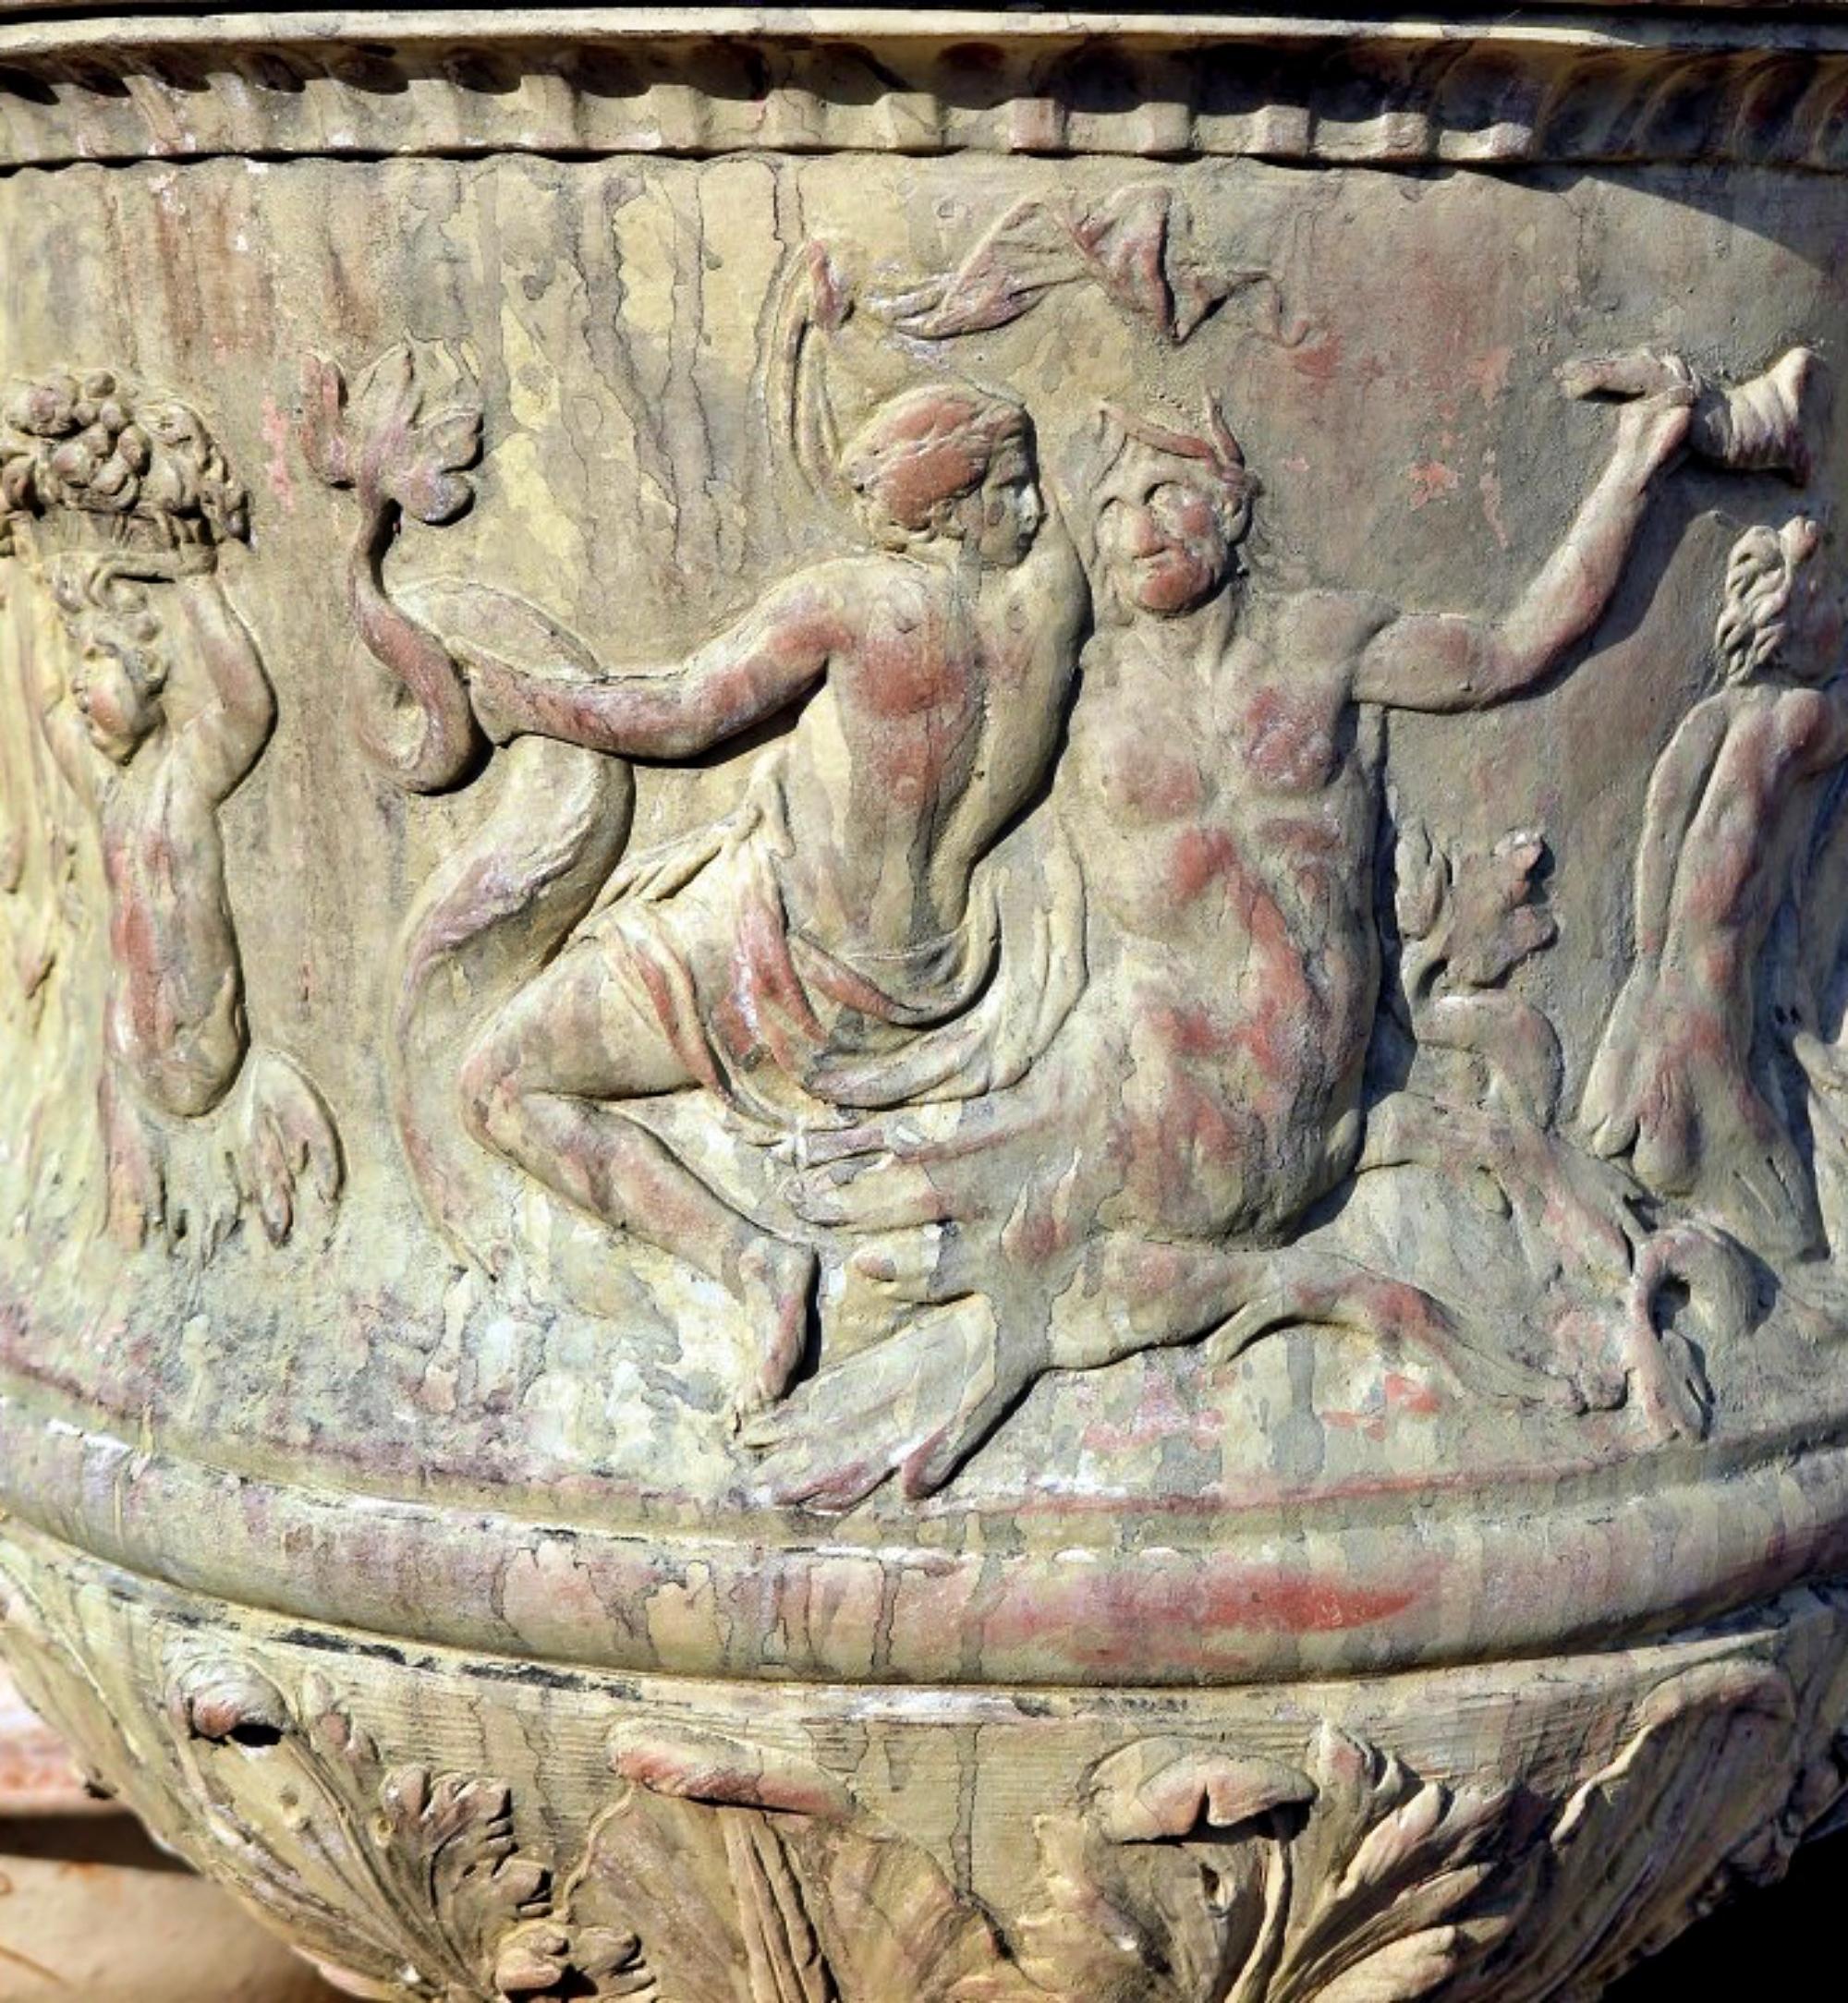 
VASE ROMAIN ANTIQUE DE LA BACCANALE (COLLECTION DU LOUVRE) REPRODUCTION 1:1
début du 20e siècle
Grands vases d'origine romaine appelés 